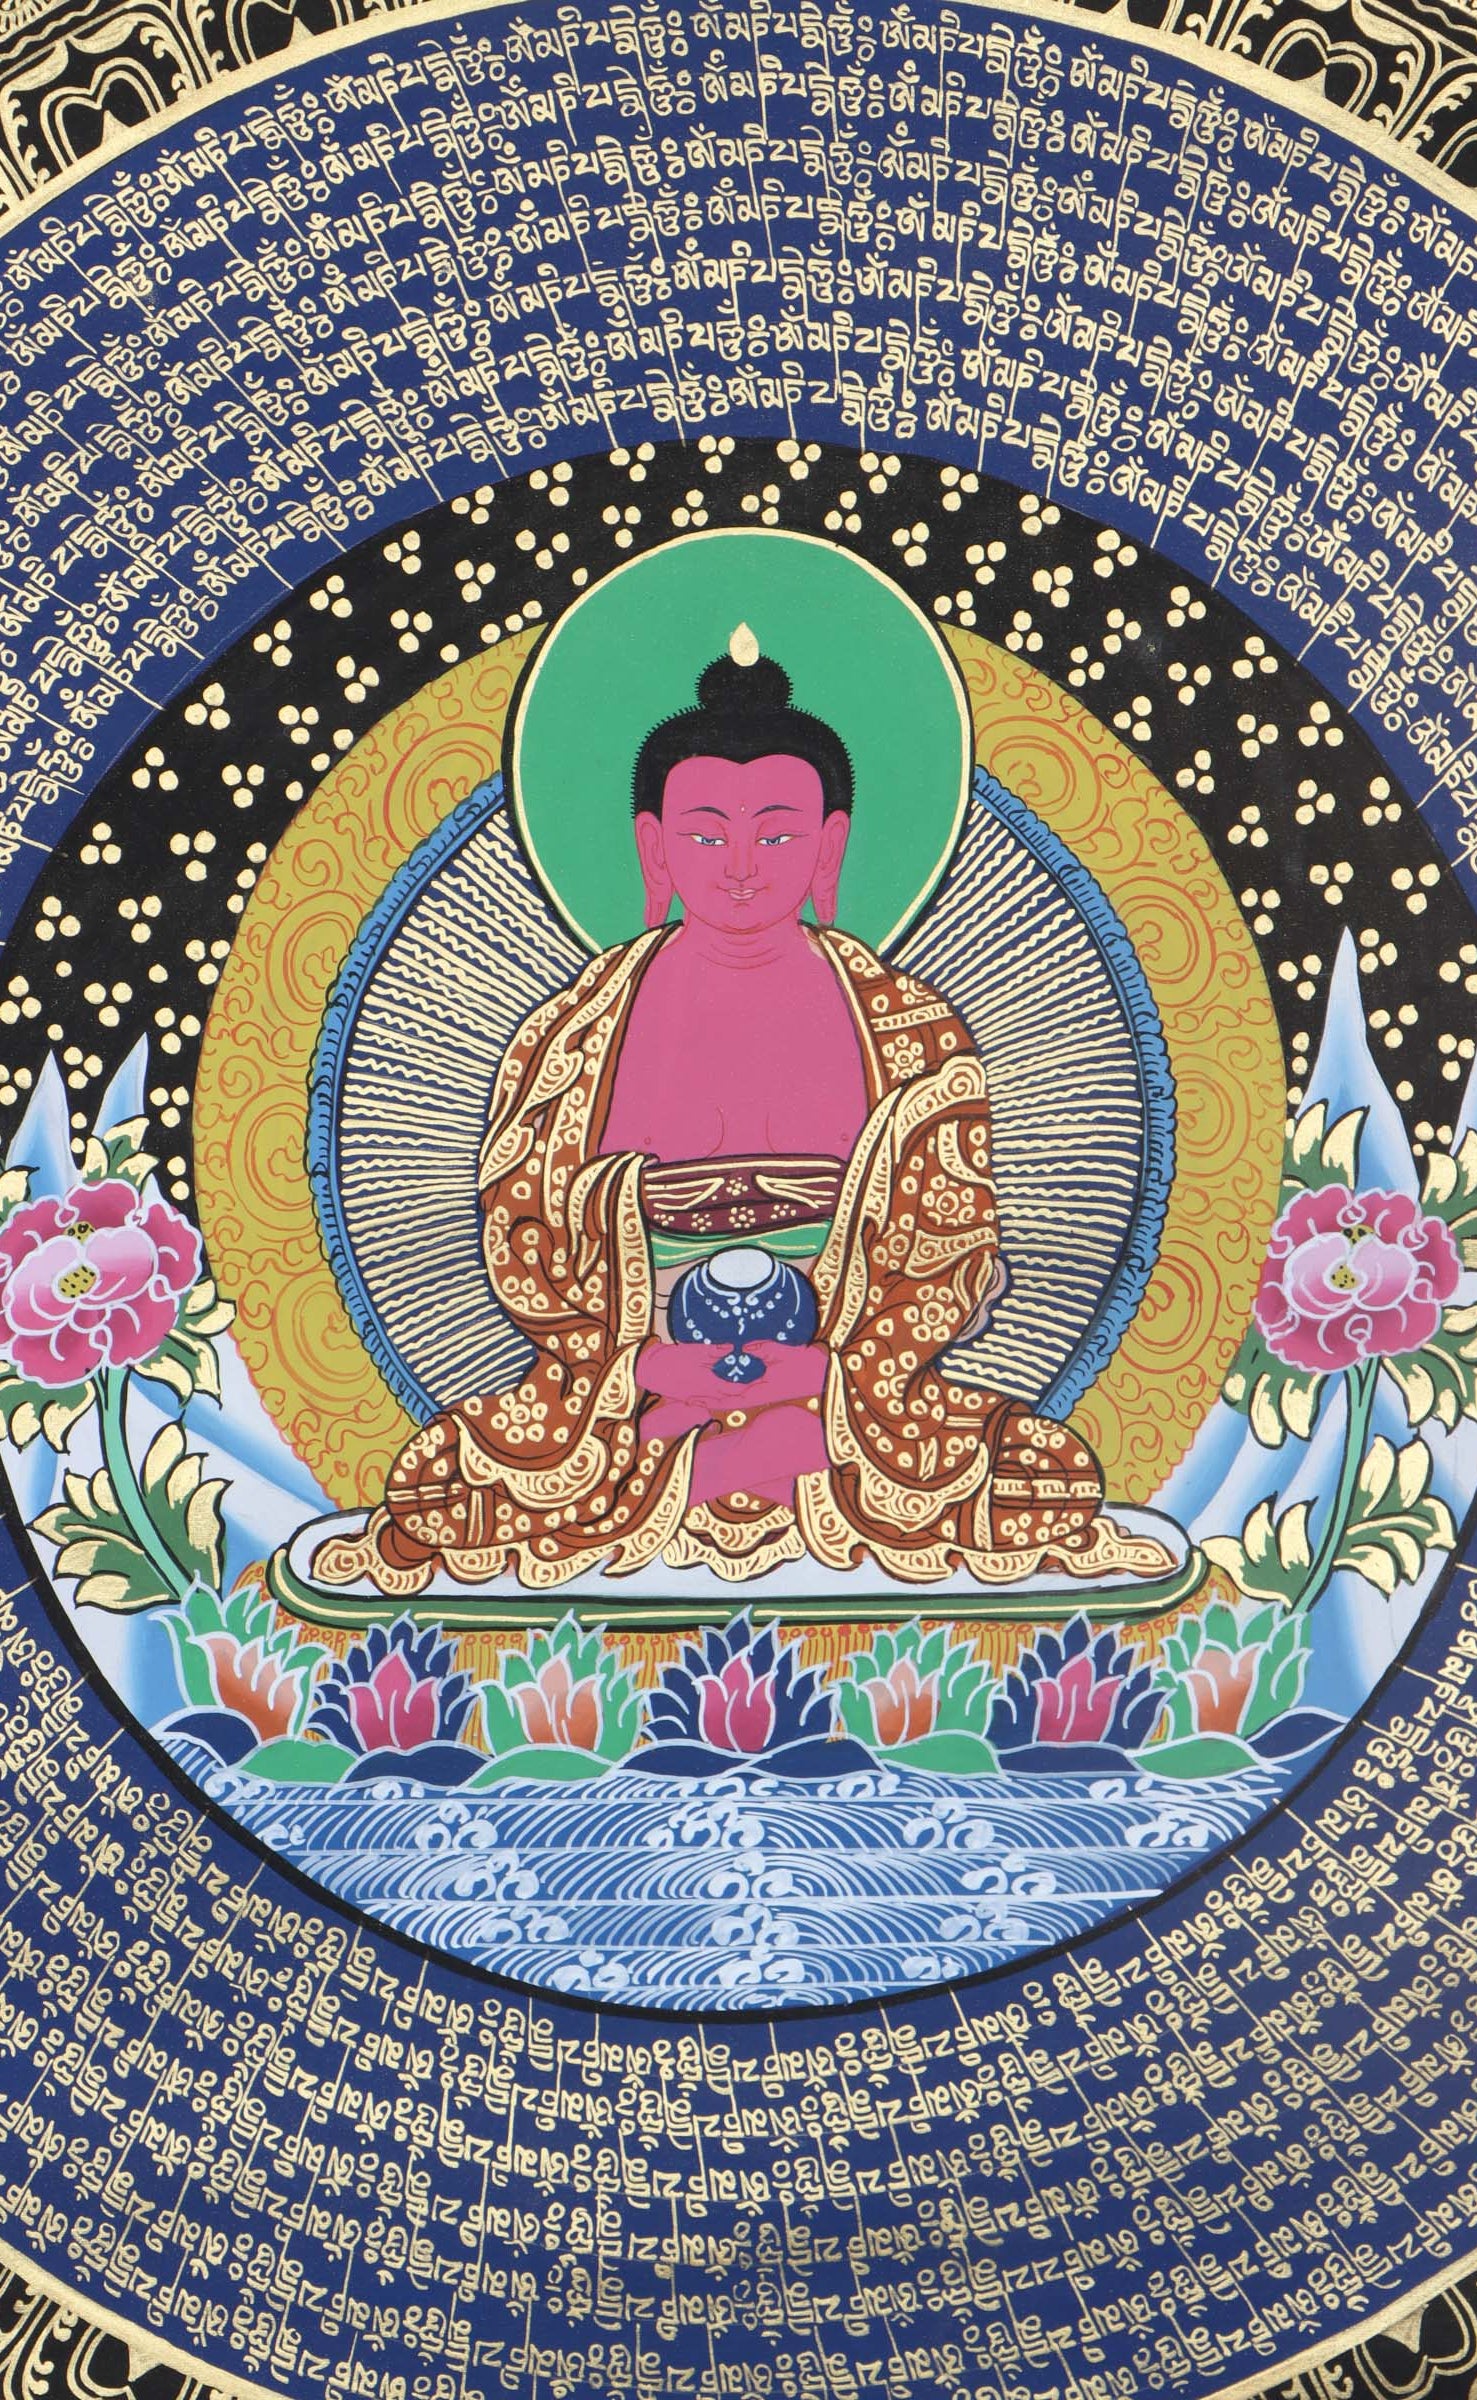 Handpainted Amitabha Buddha Mandala - Best handpainted thangka painting - LuckyThanka 